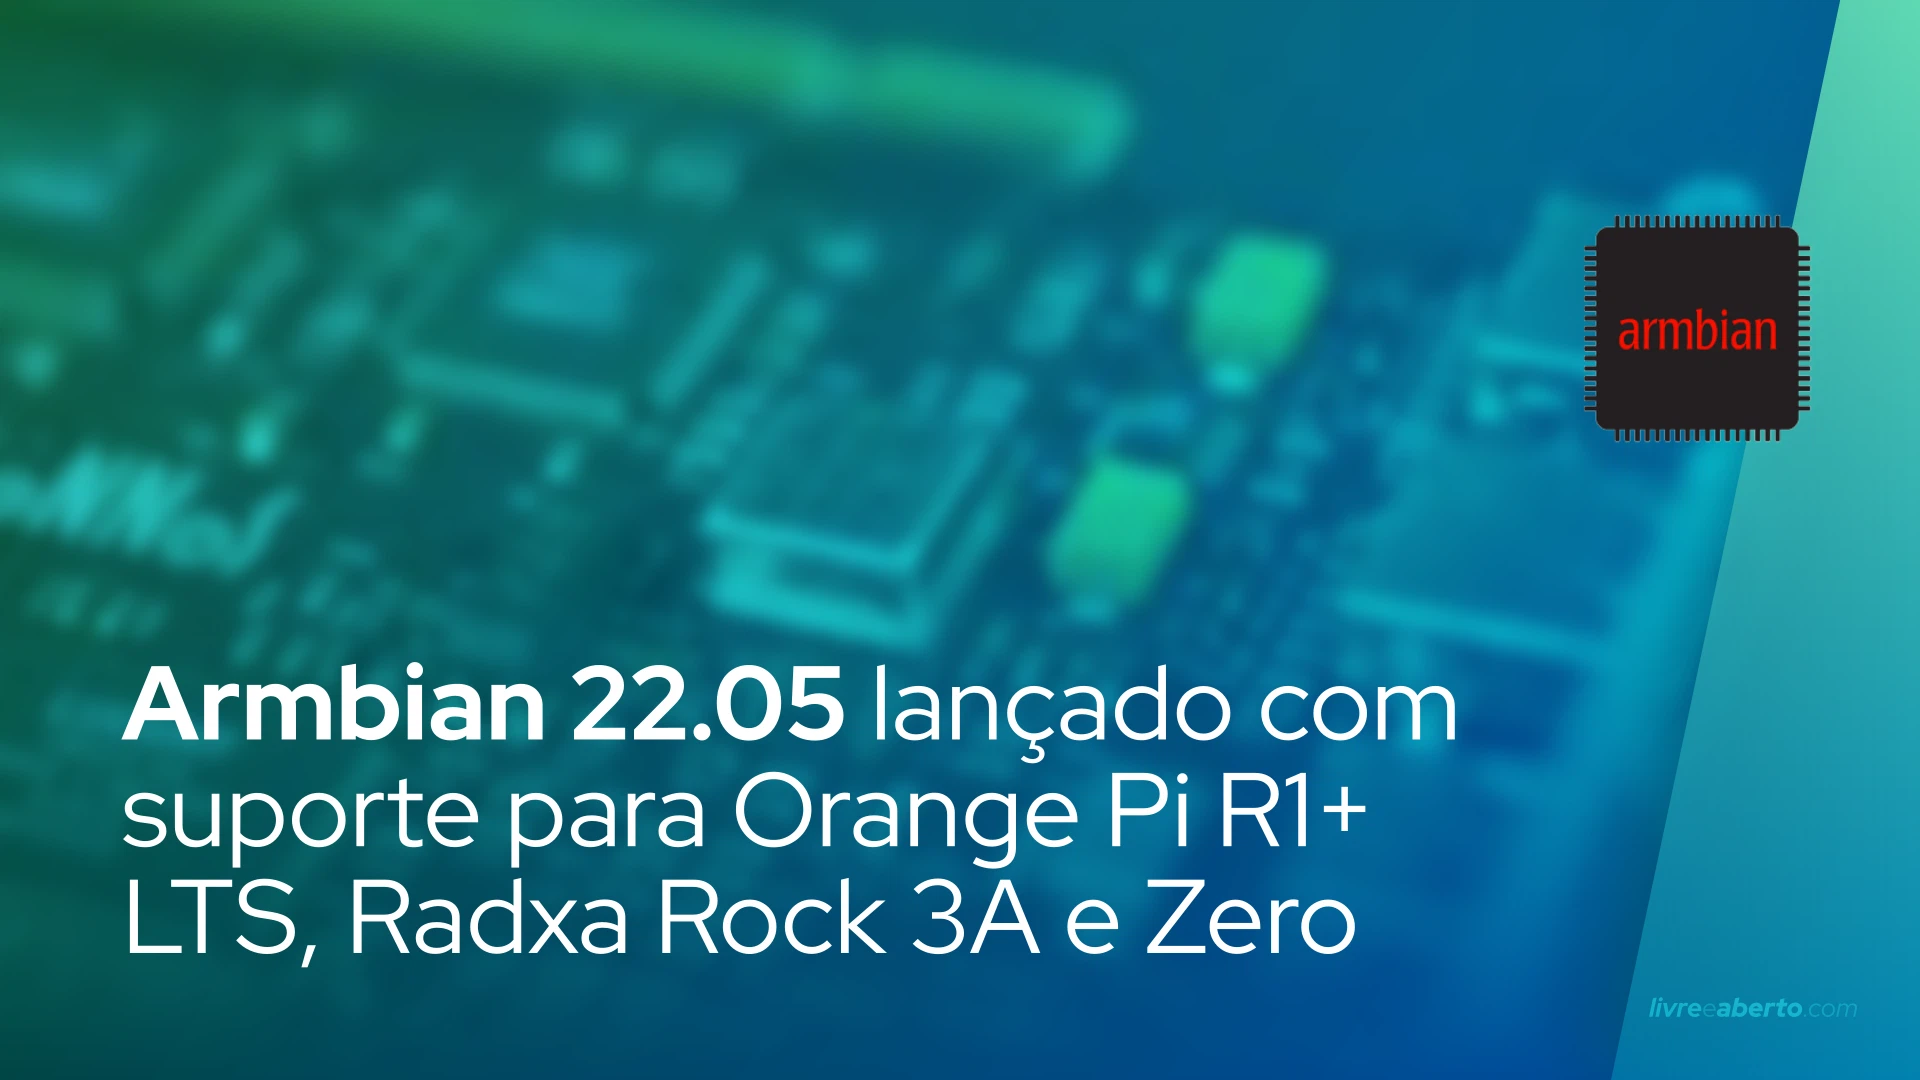 Armbian 22.05 lançado com suporte para Orange Pi R1+ LTS, Radxa Rock 3A e Zero